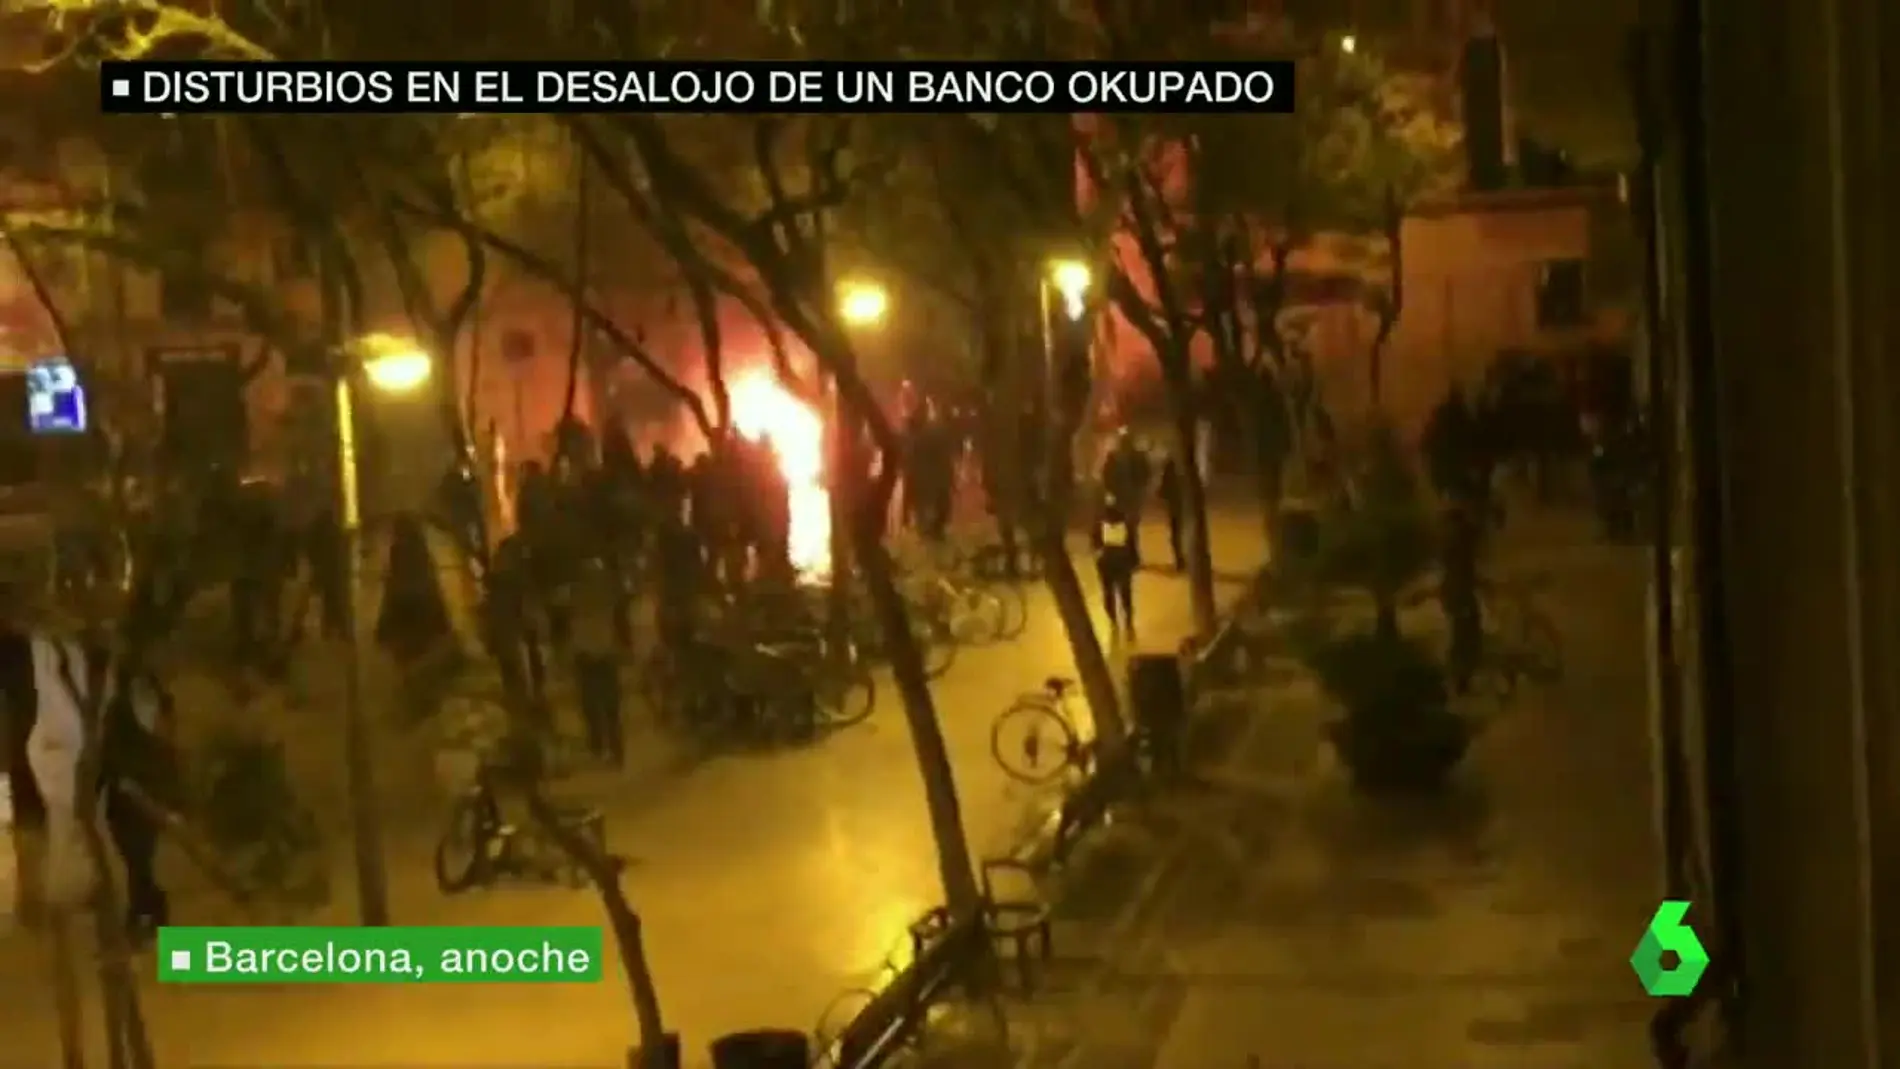 Disturbios en el desalojo de un banco okupado en Barcelona